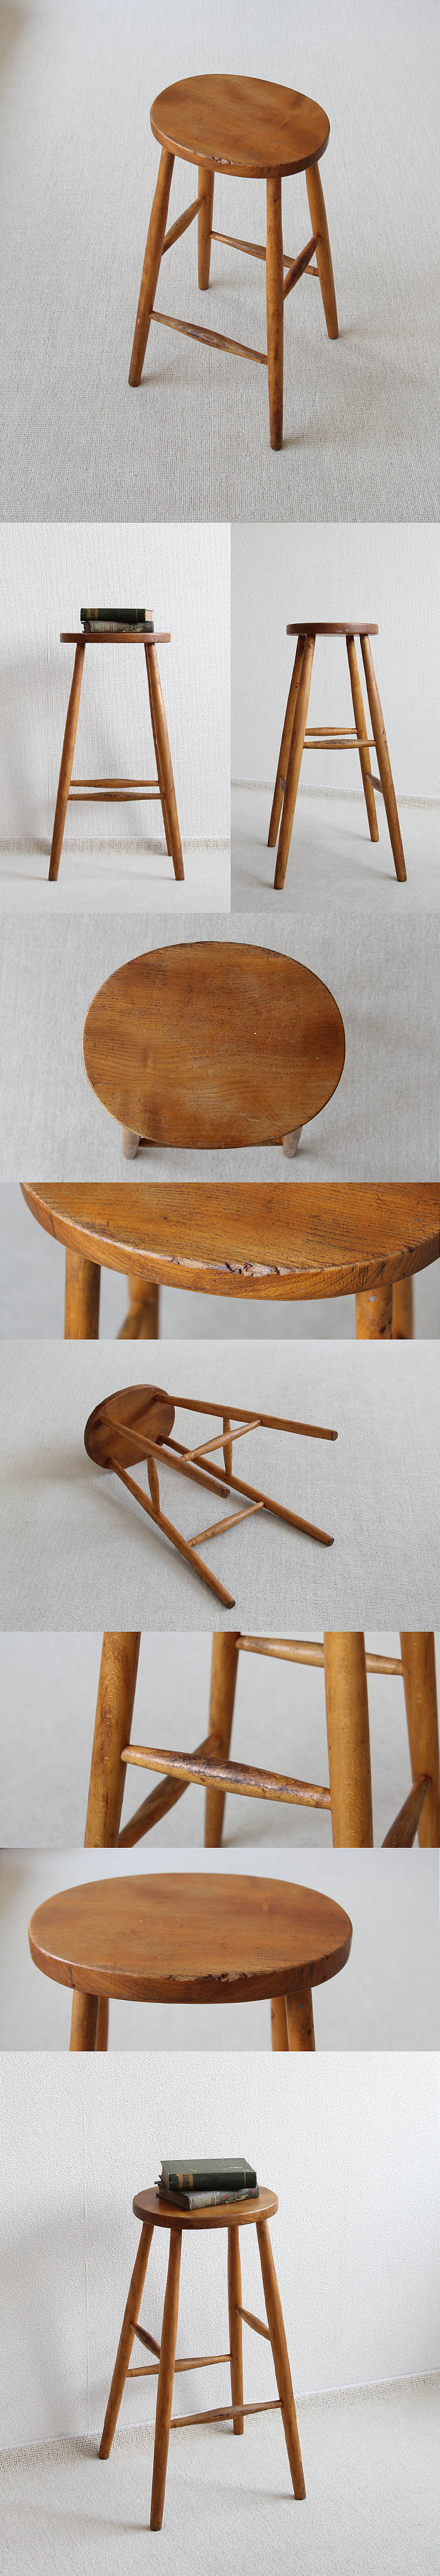 イギリス アンティーク ハイスツール 木製椅子 飾り台 カントリー 無垢材 家具 V-279